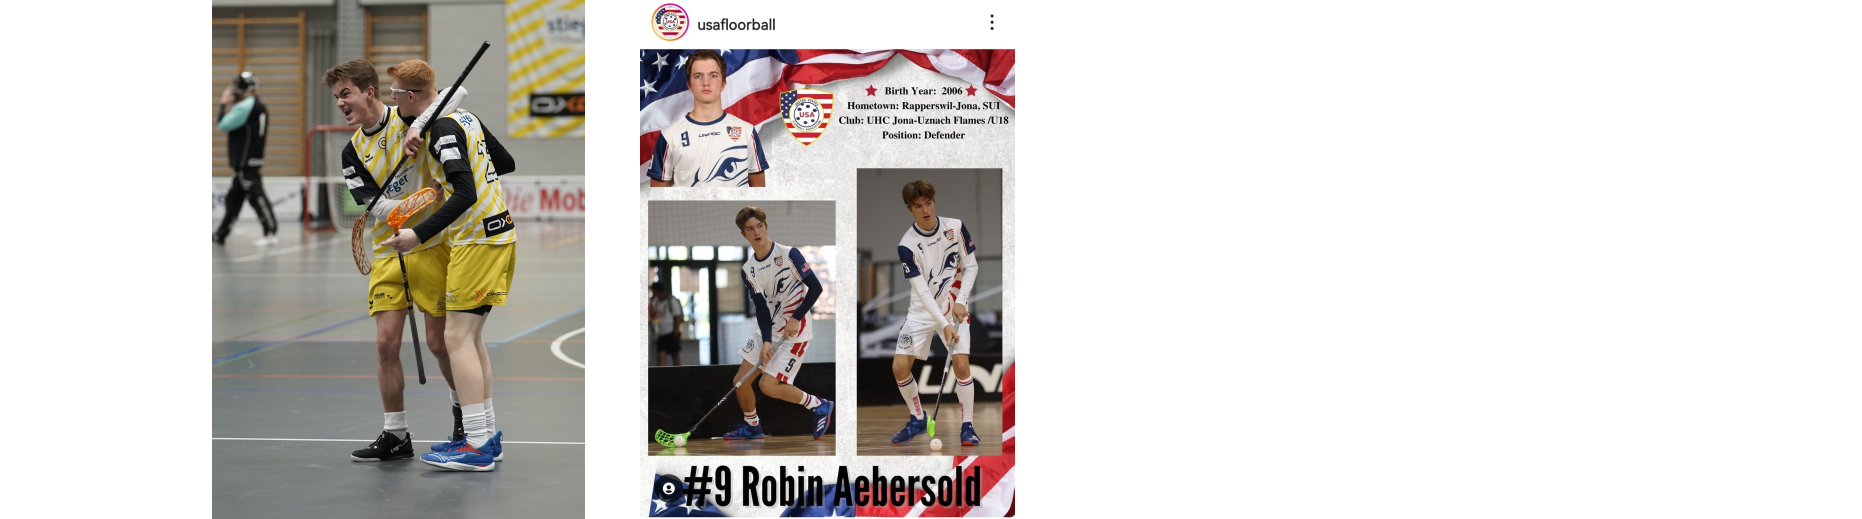 Robin Aebersold läuft an U19-WM in Dänemark für die USA auf